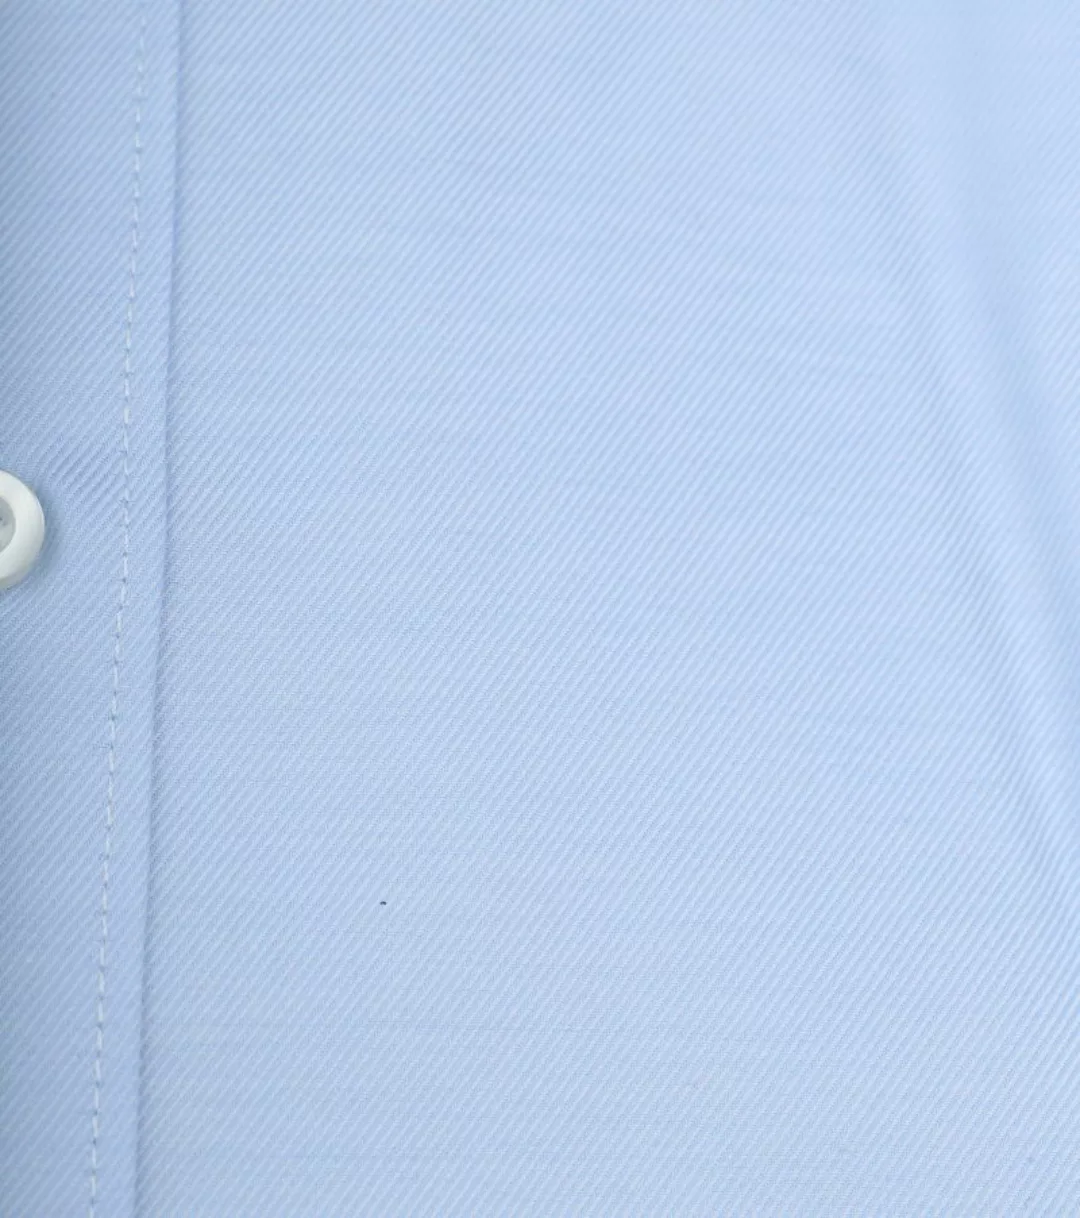 OLYMP Level 5 Hemd Hellblau  - Größe 38 günstig online kaufen